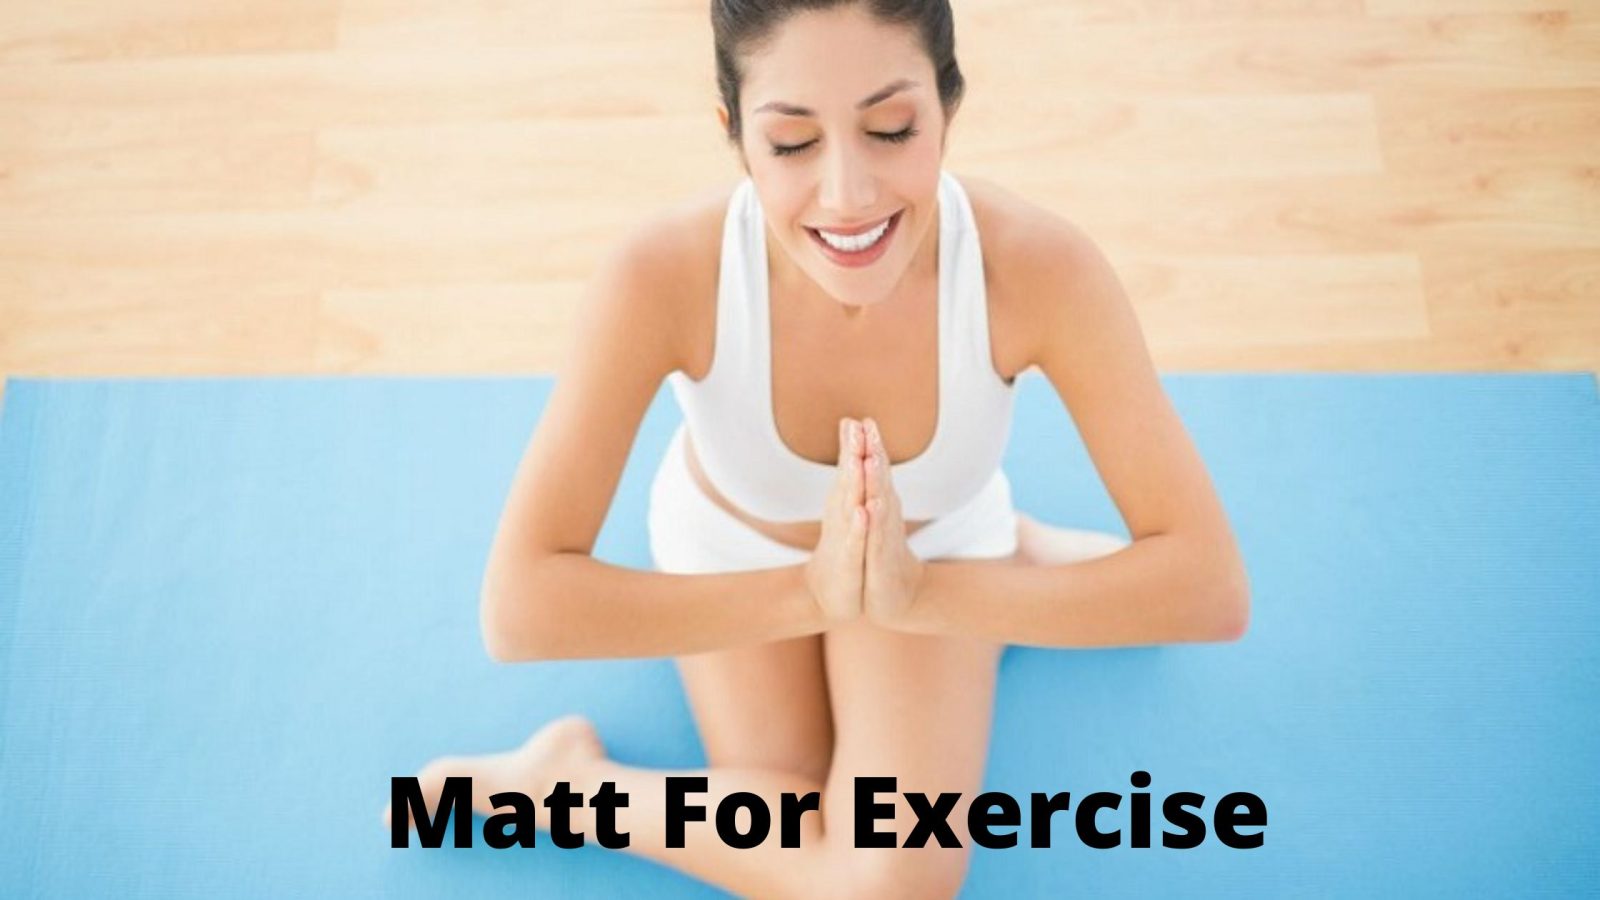 Matt for Exercise